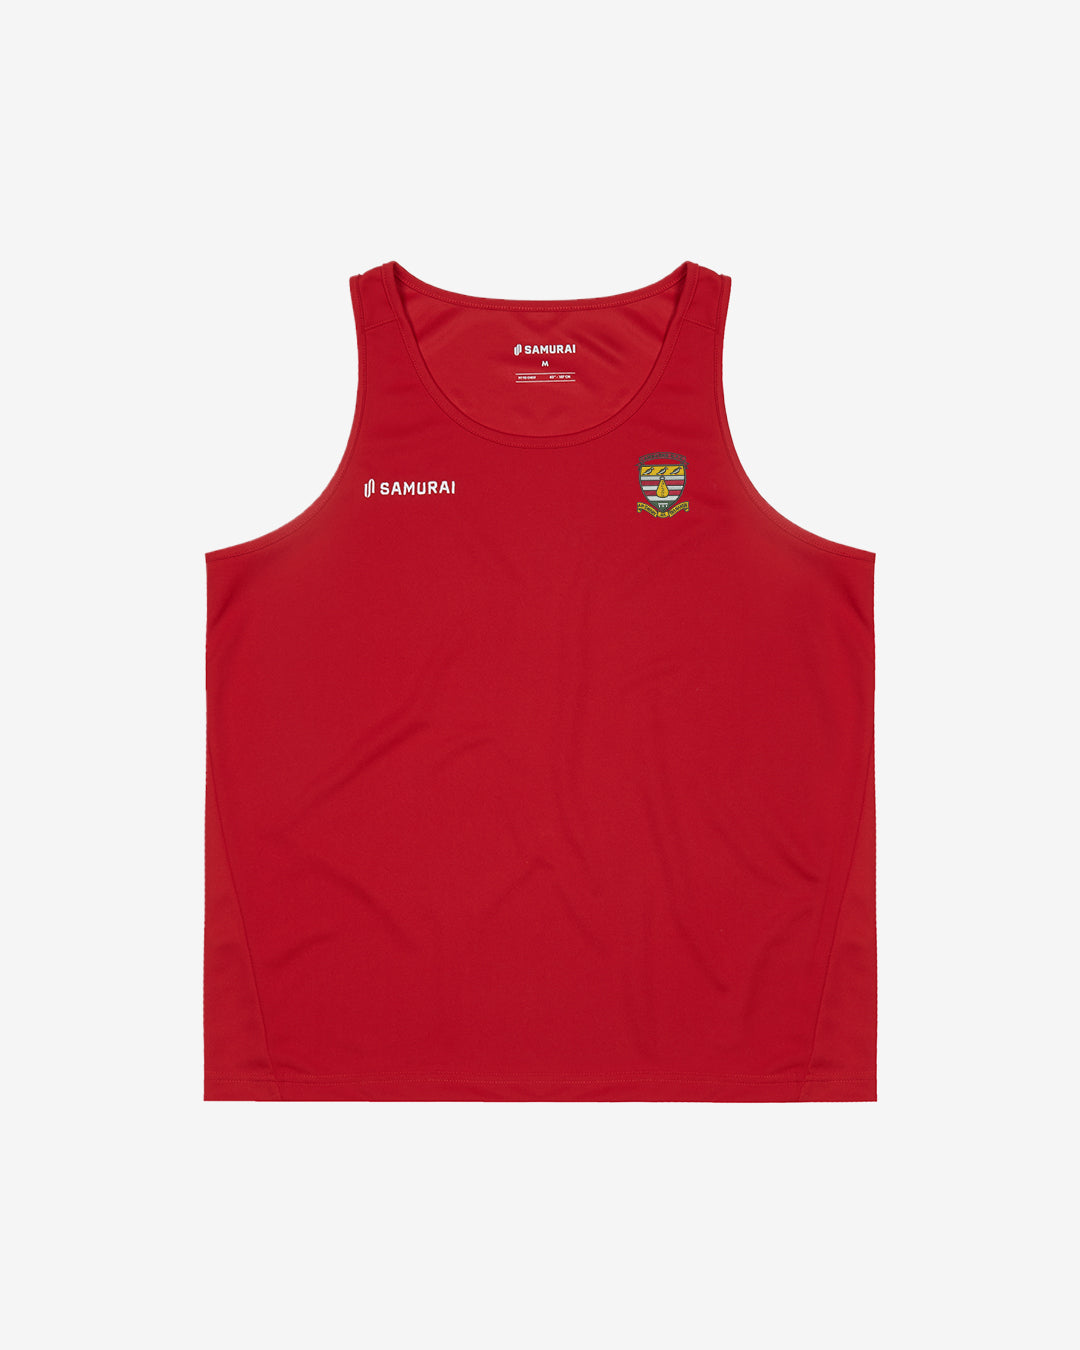 Camborne RFC - EP:0105 - Classic Vest - Red